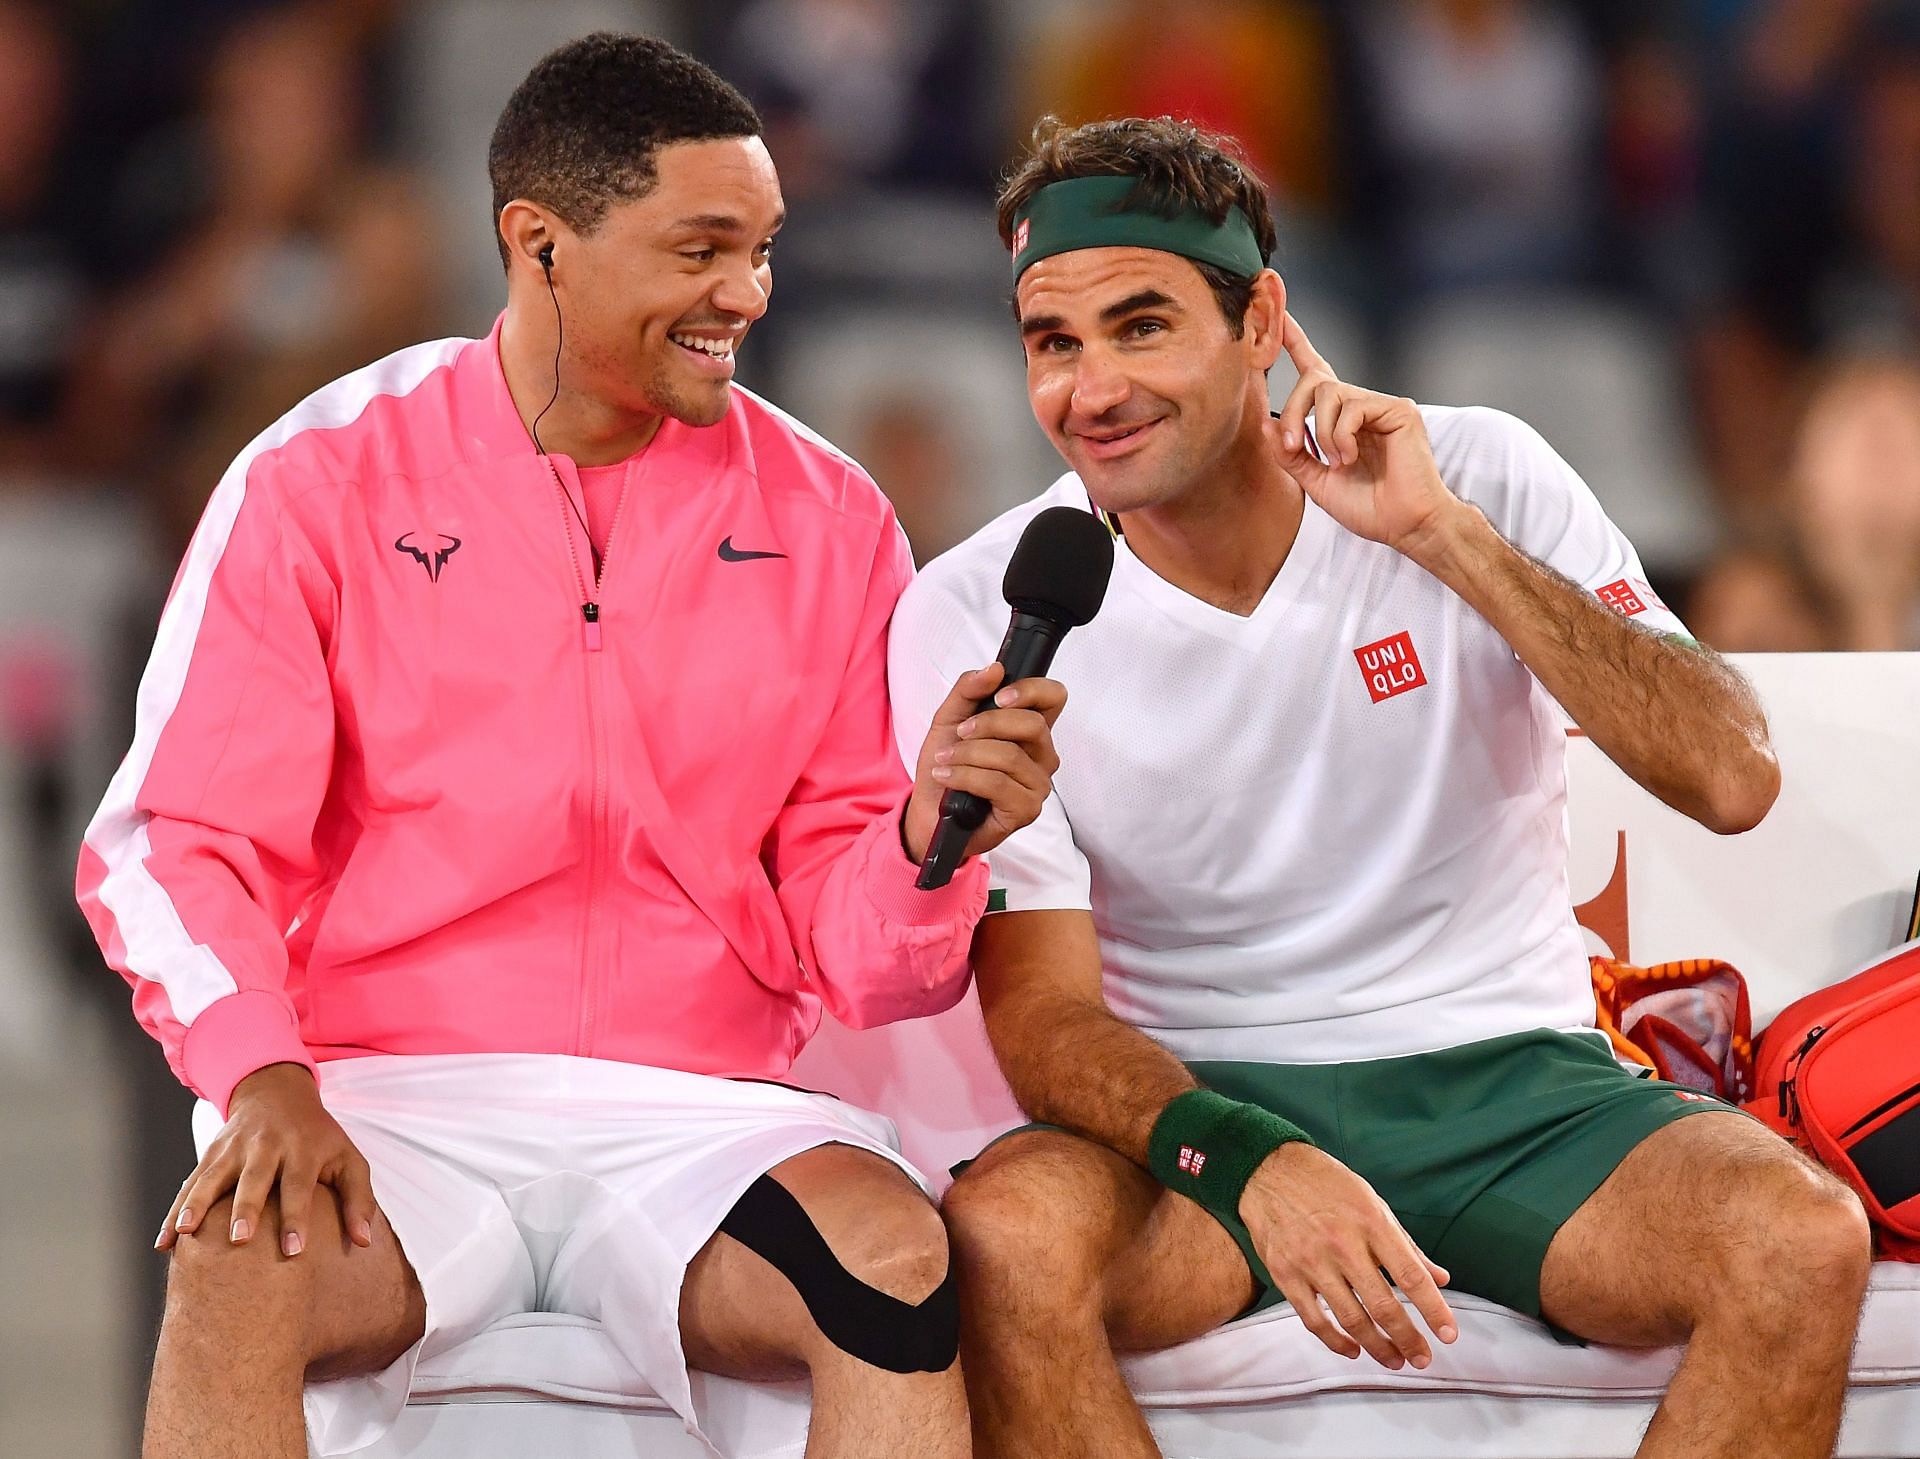 Roger Federer recently starred in a Switzerland Tourism commercial alongside Trevor Noah